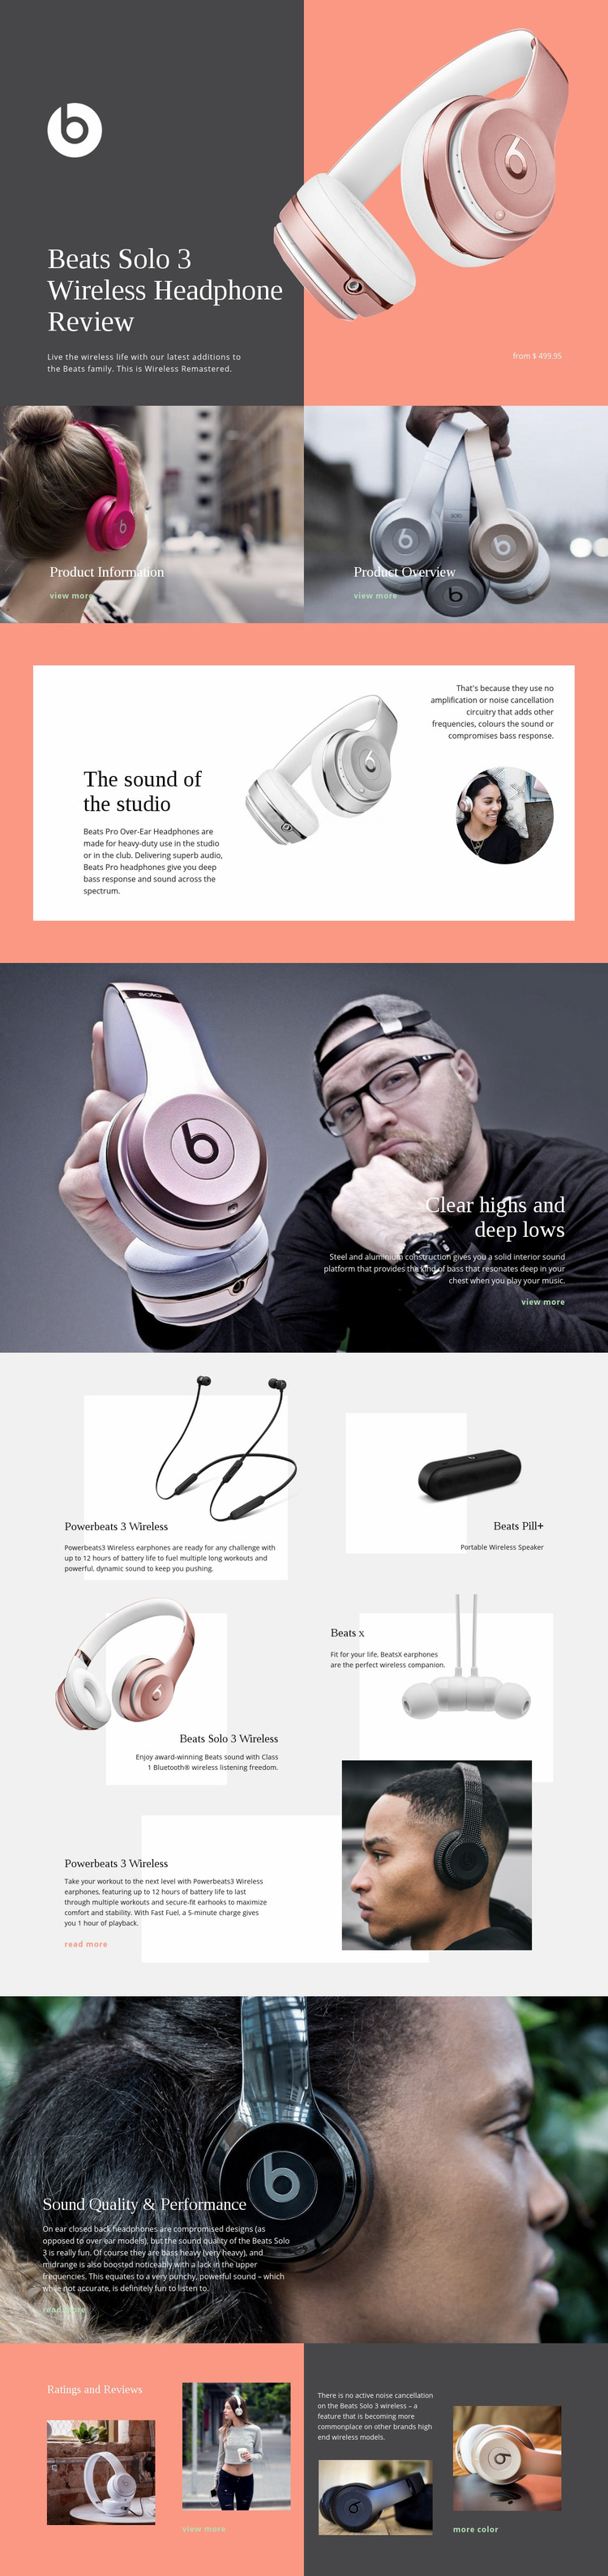 Beats Wireless Web Page Design